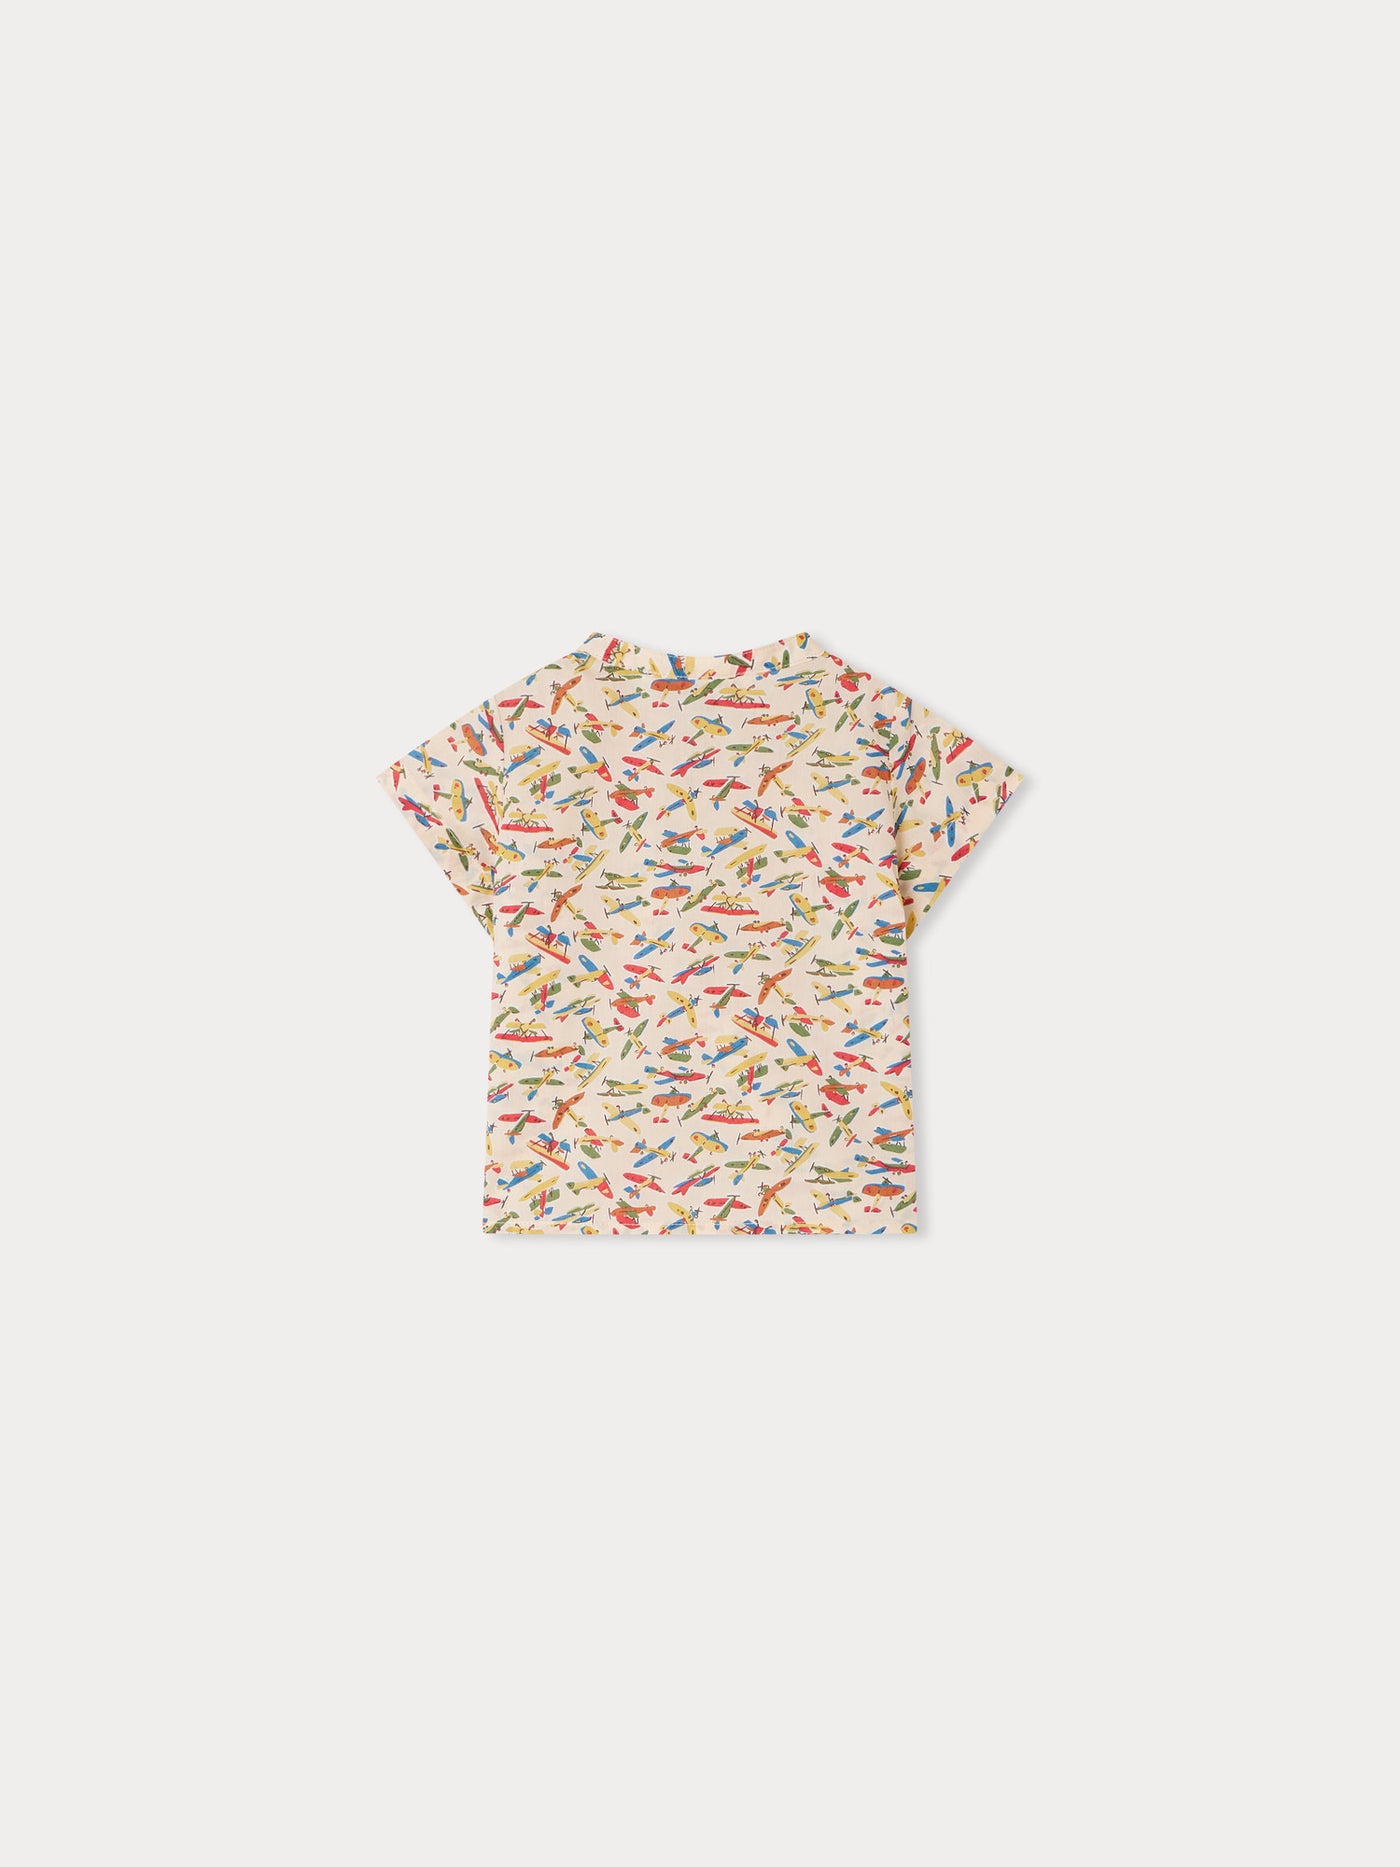 Cesari Shirt multicolored